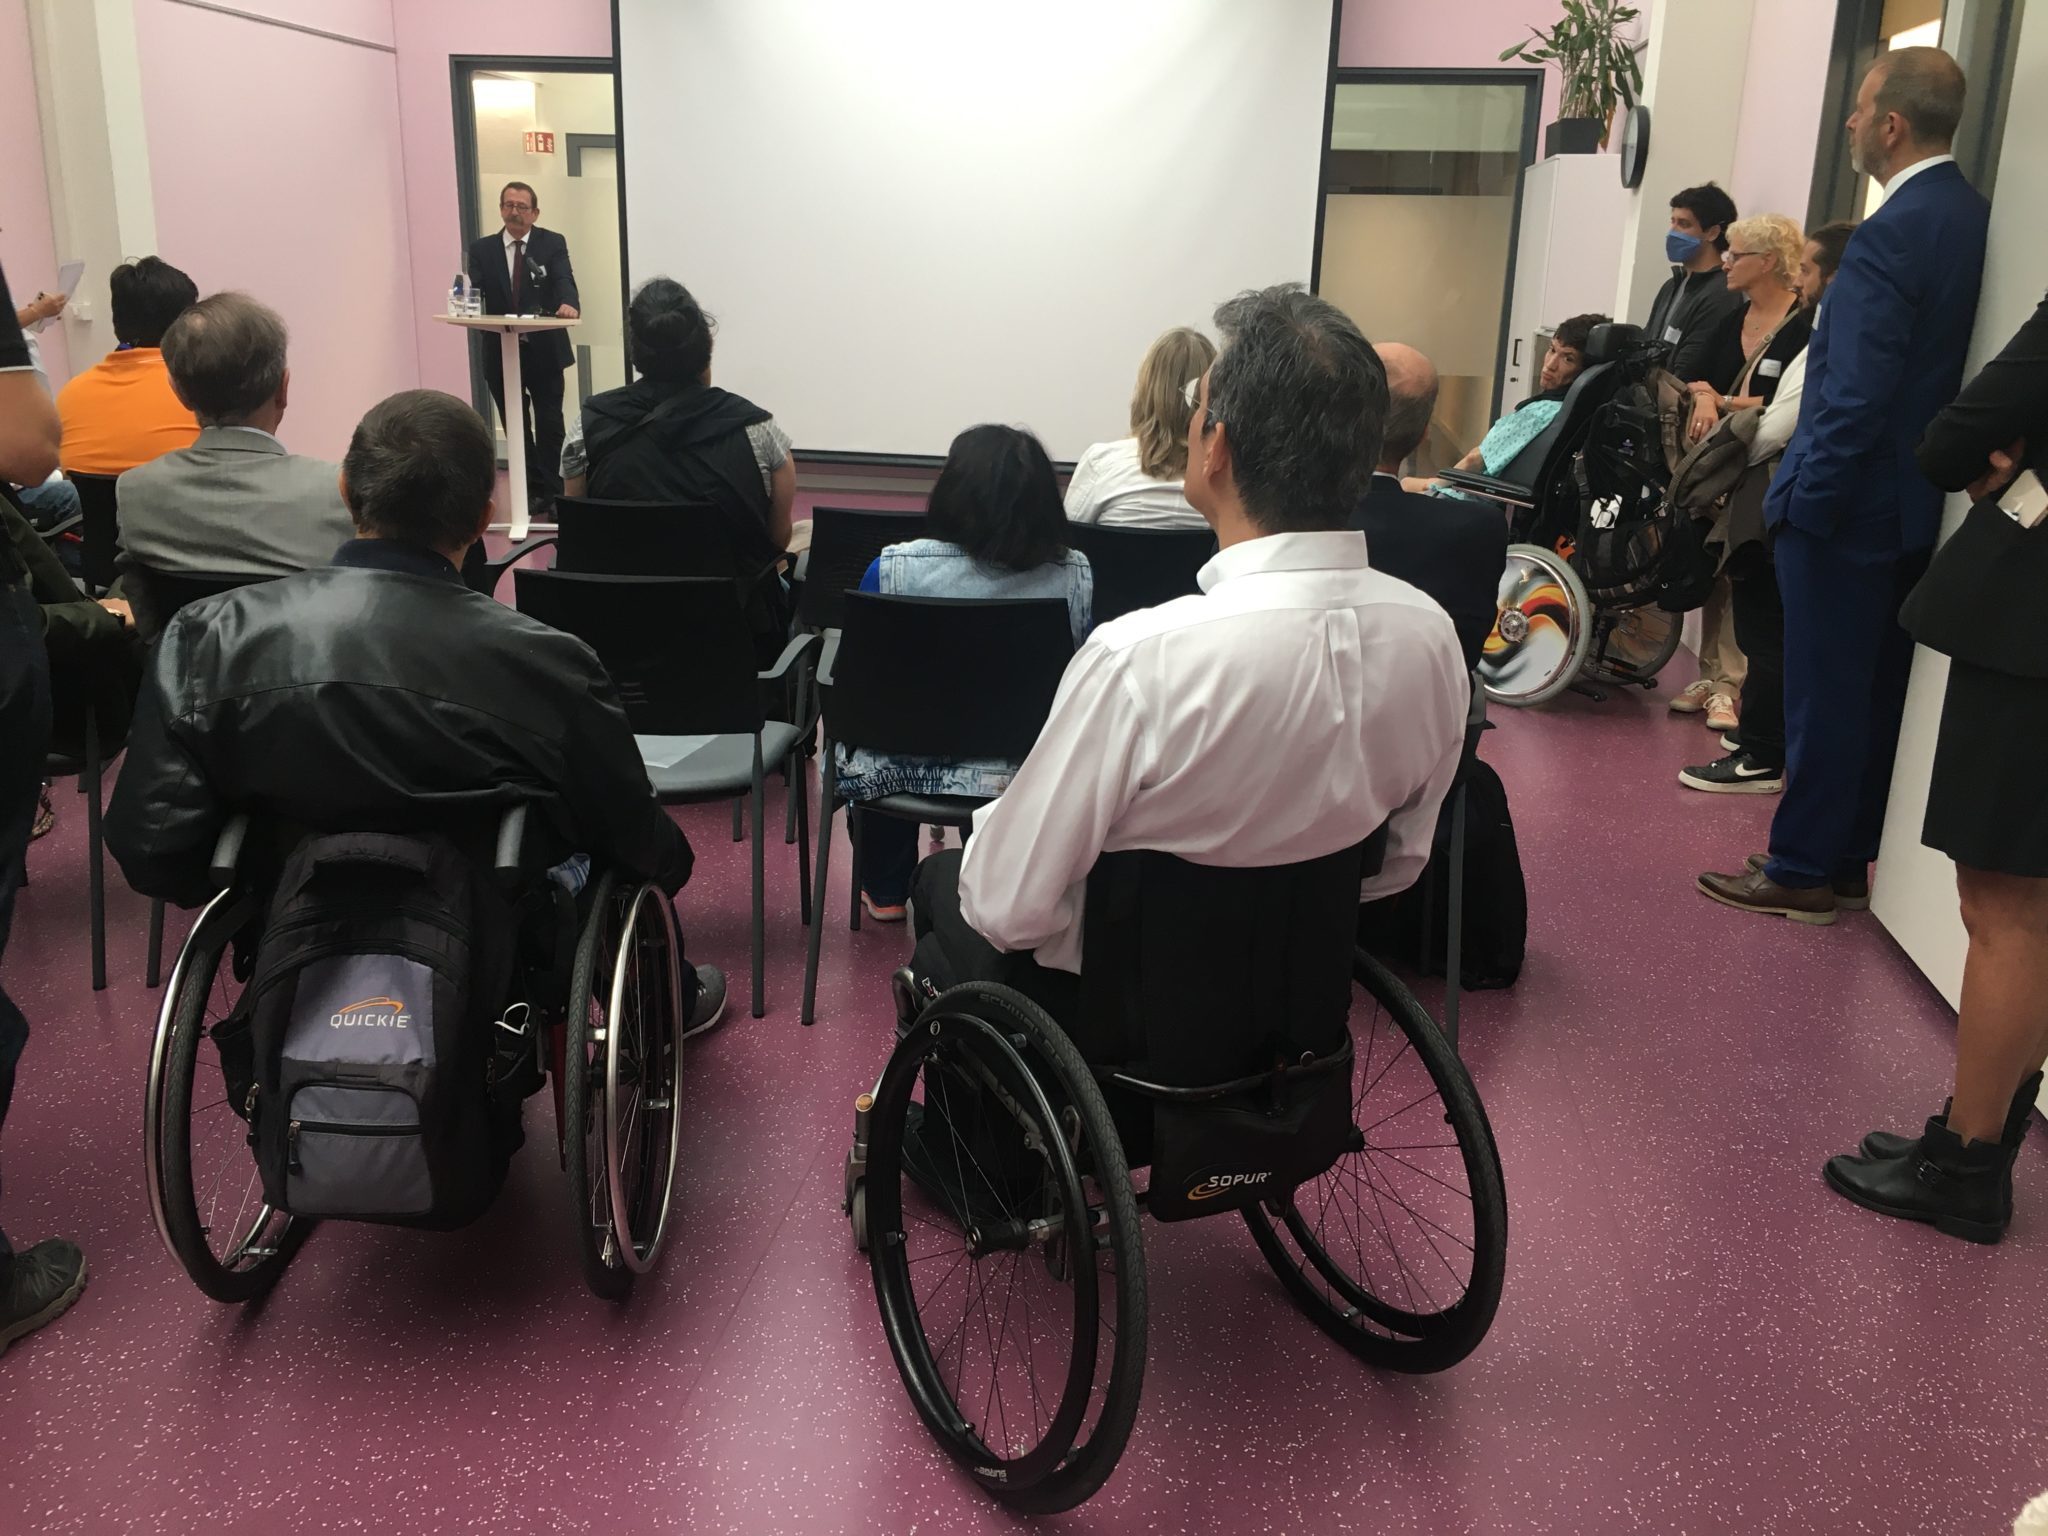 Genève: une Maison de l'autonomie pour faciliter la vie du handicap